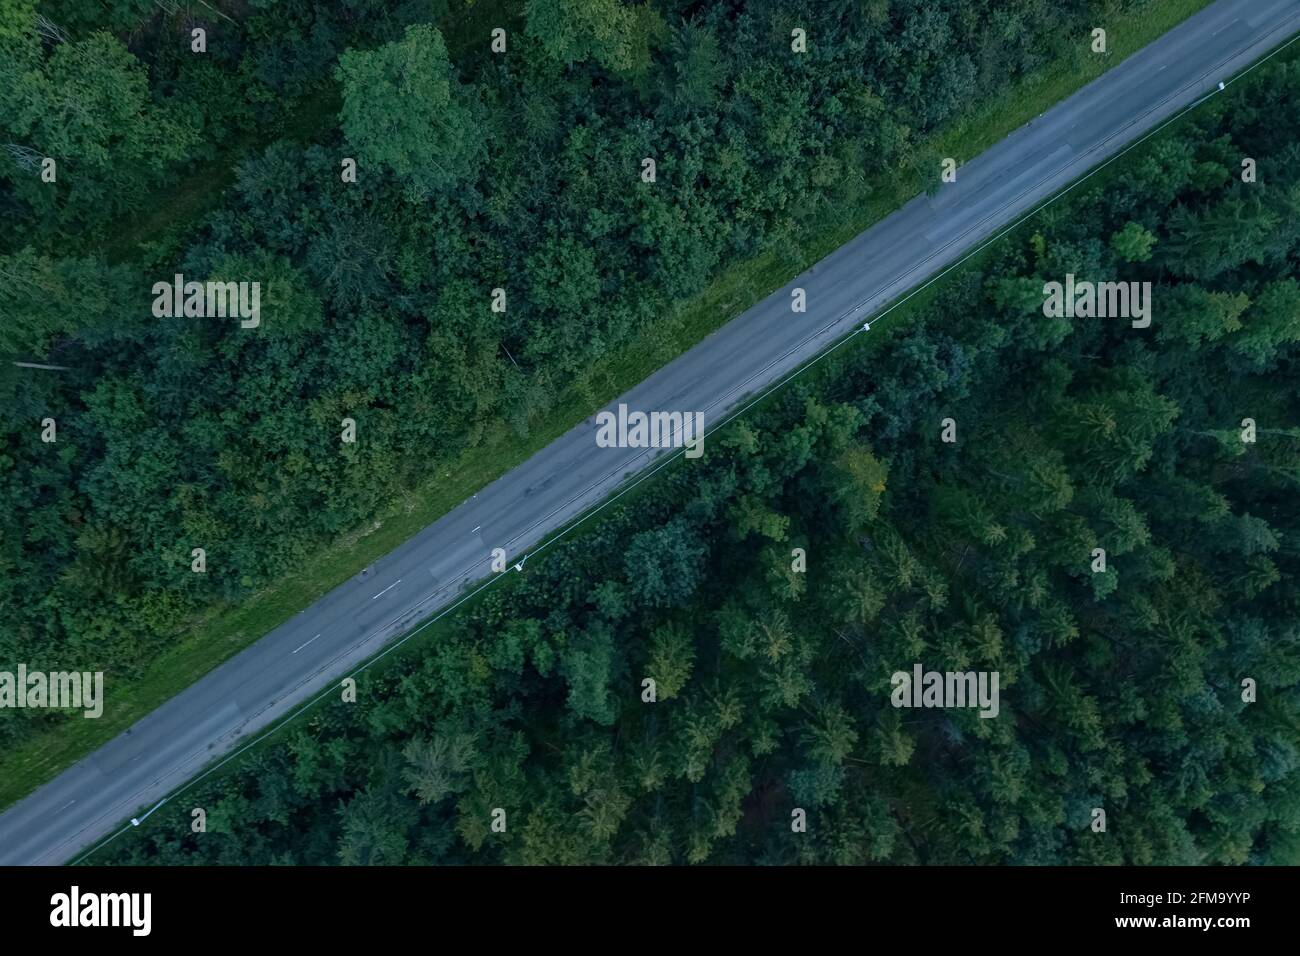 Une rue de la vue de dessus, filmée par une drone, diagonale, divisant la photo en deux parties égales. Banque D'Images